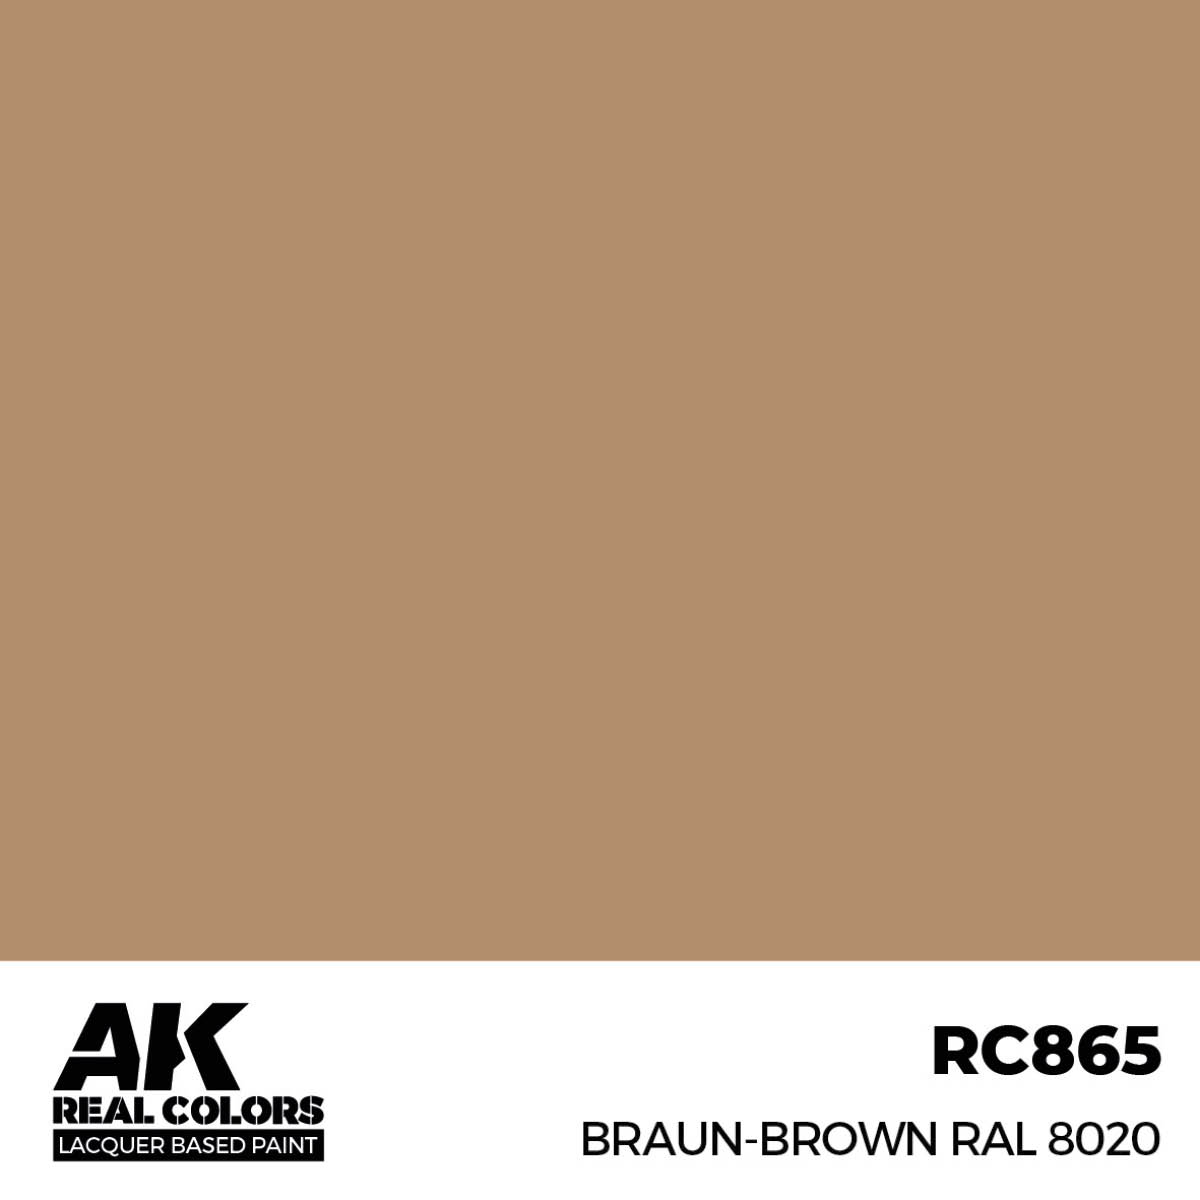 Braun-Brown RAL 8020